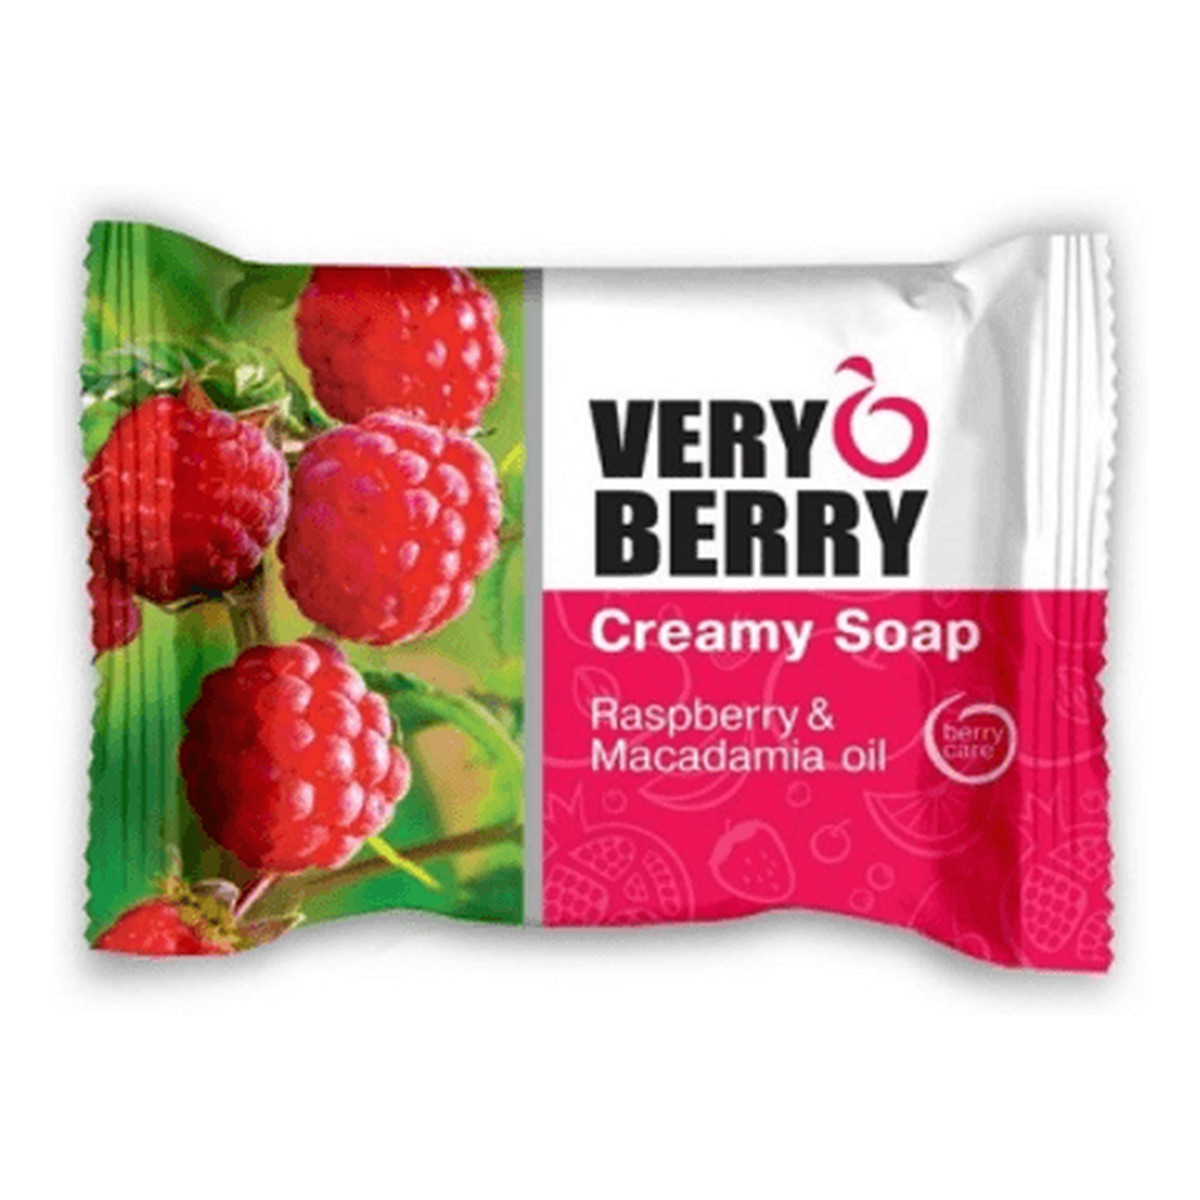 Very Berry Mydło kremowe w kostce Raspberry & Macadamia Oil 100g